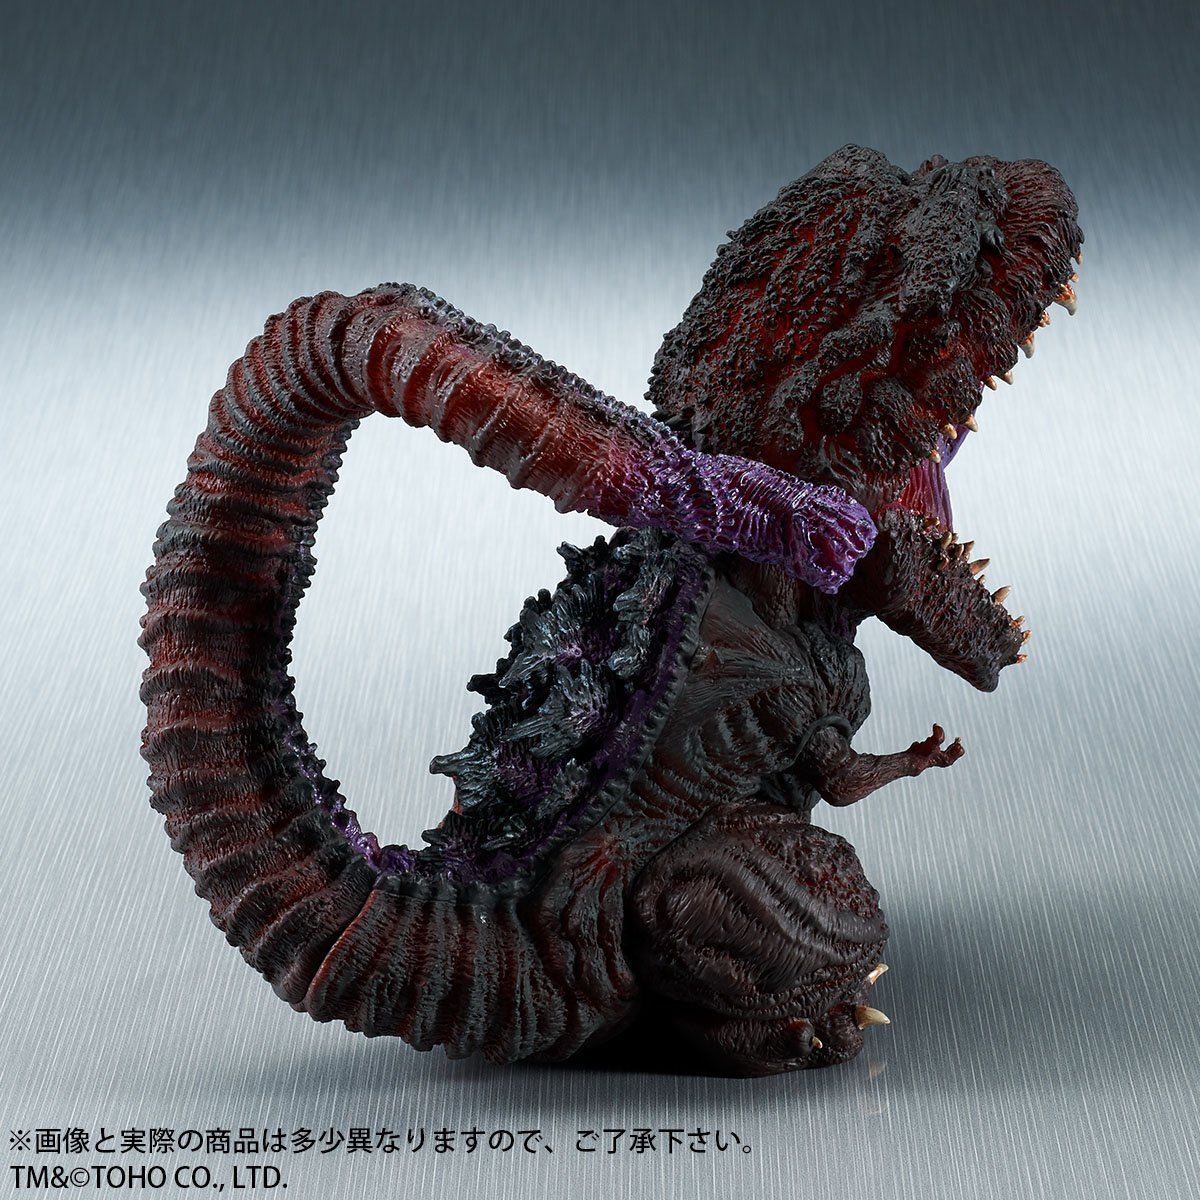 BANDAI Deforeal Shin Godzilla Light-up ver X-plus 2016 4th Form Awakening JAPAN 